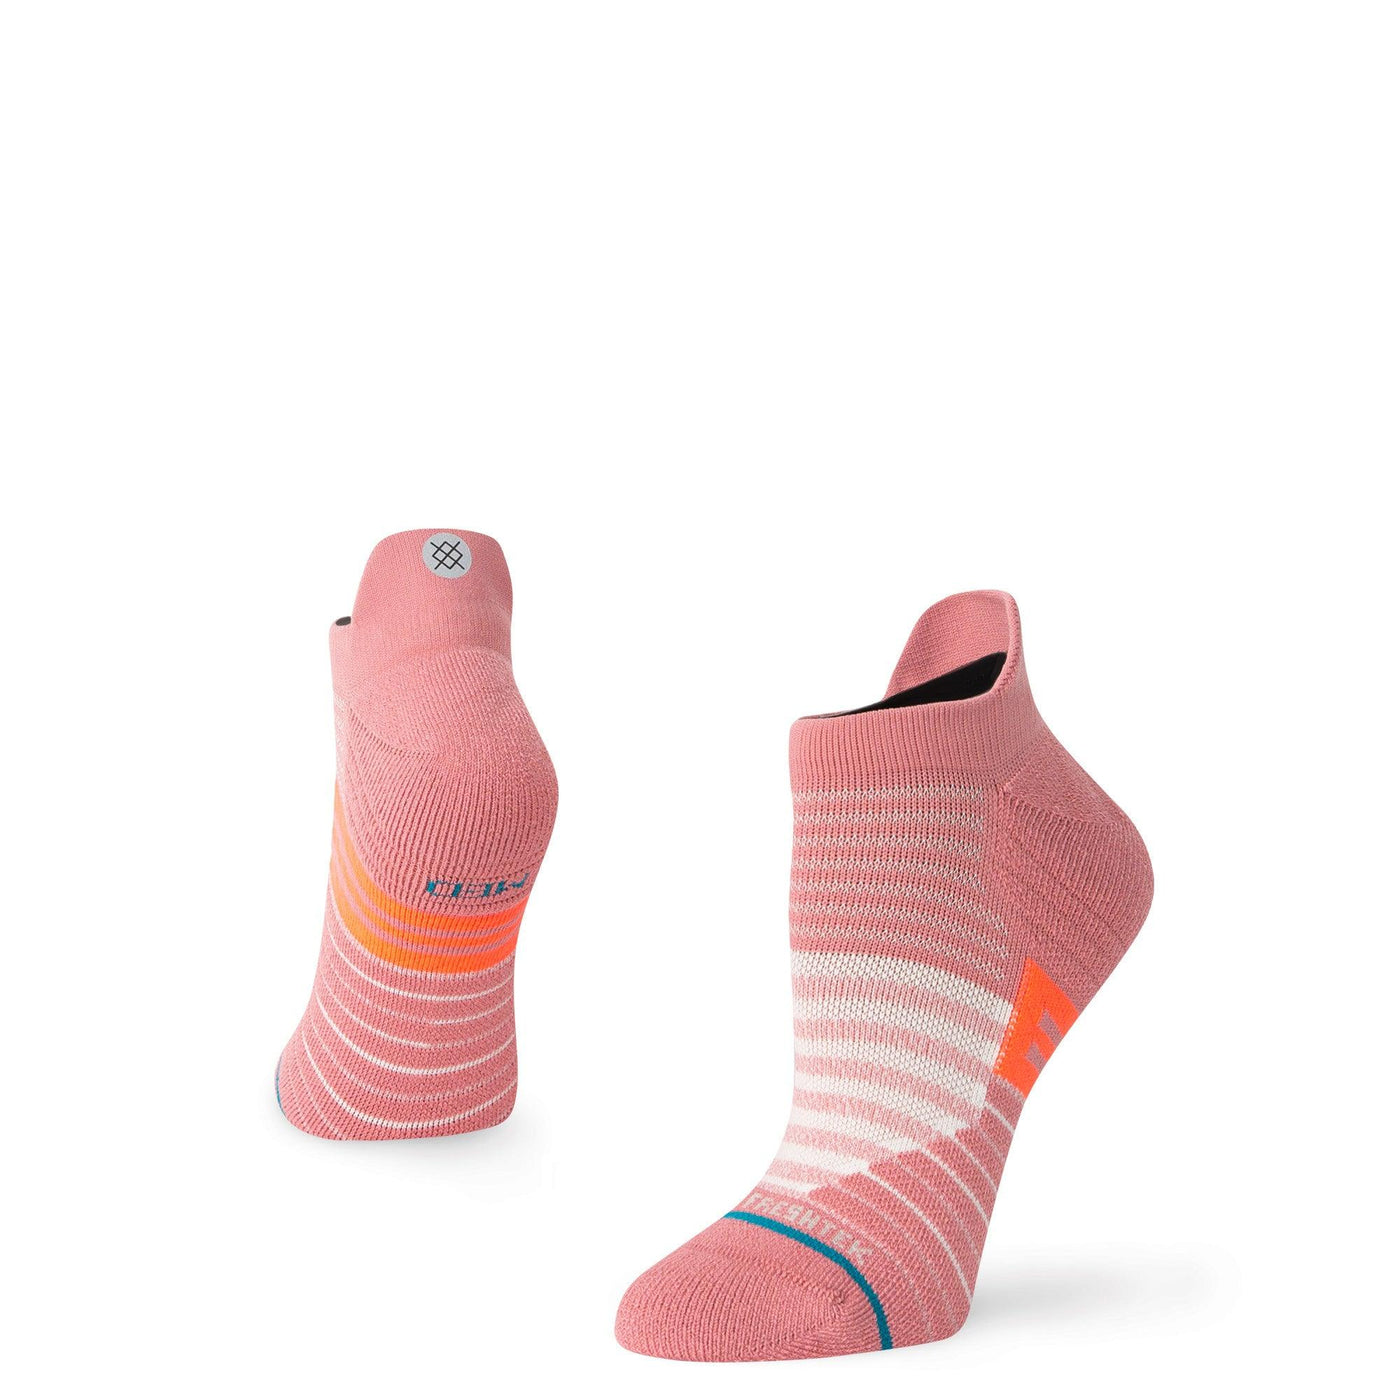 Strive | Women's Tab Ankle Socks - Stance - The Sock Monster